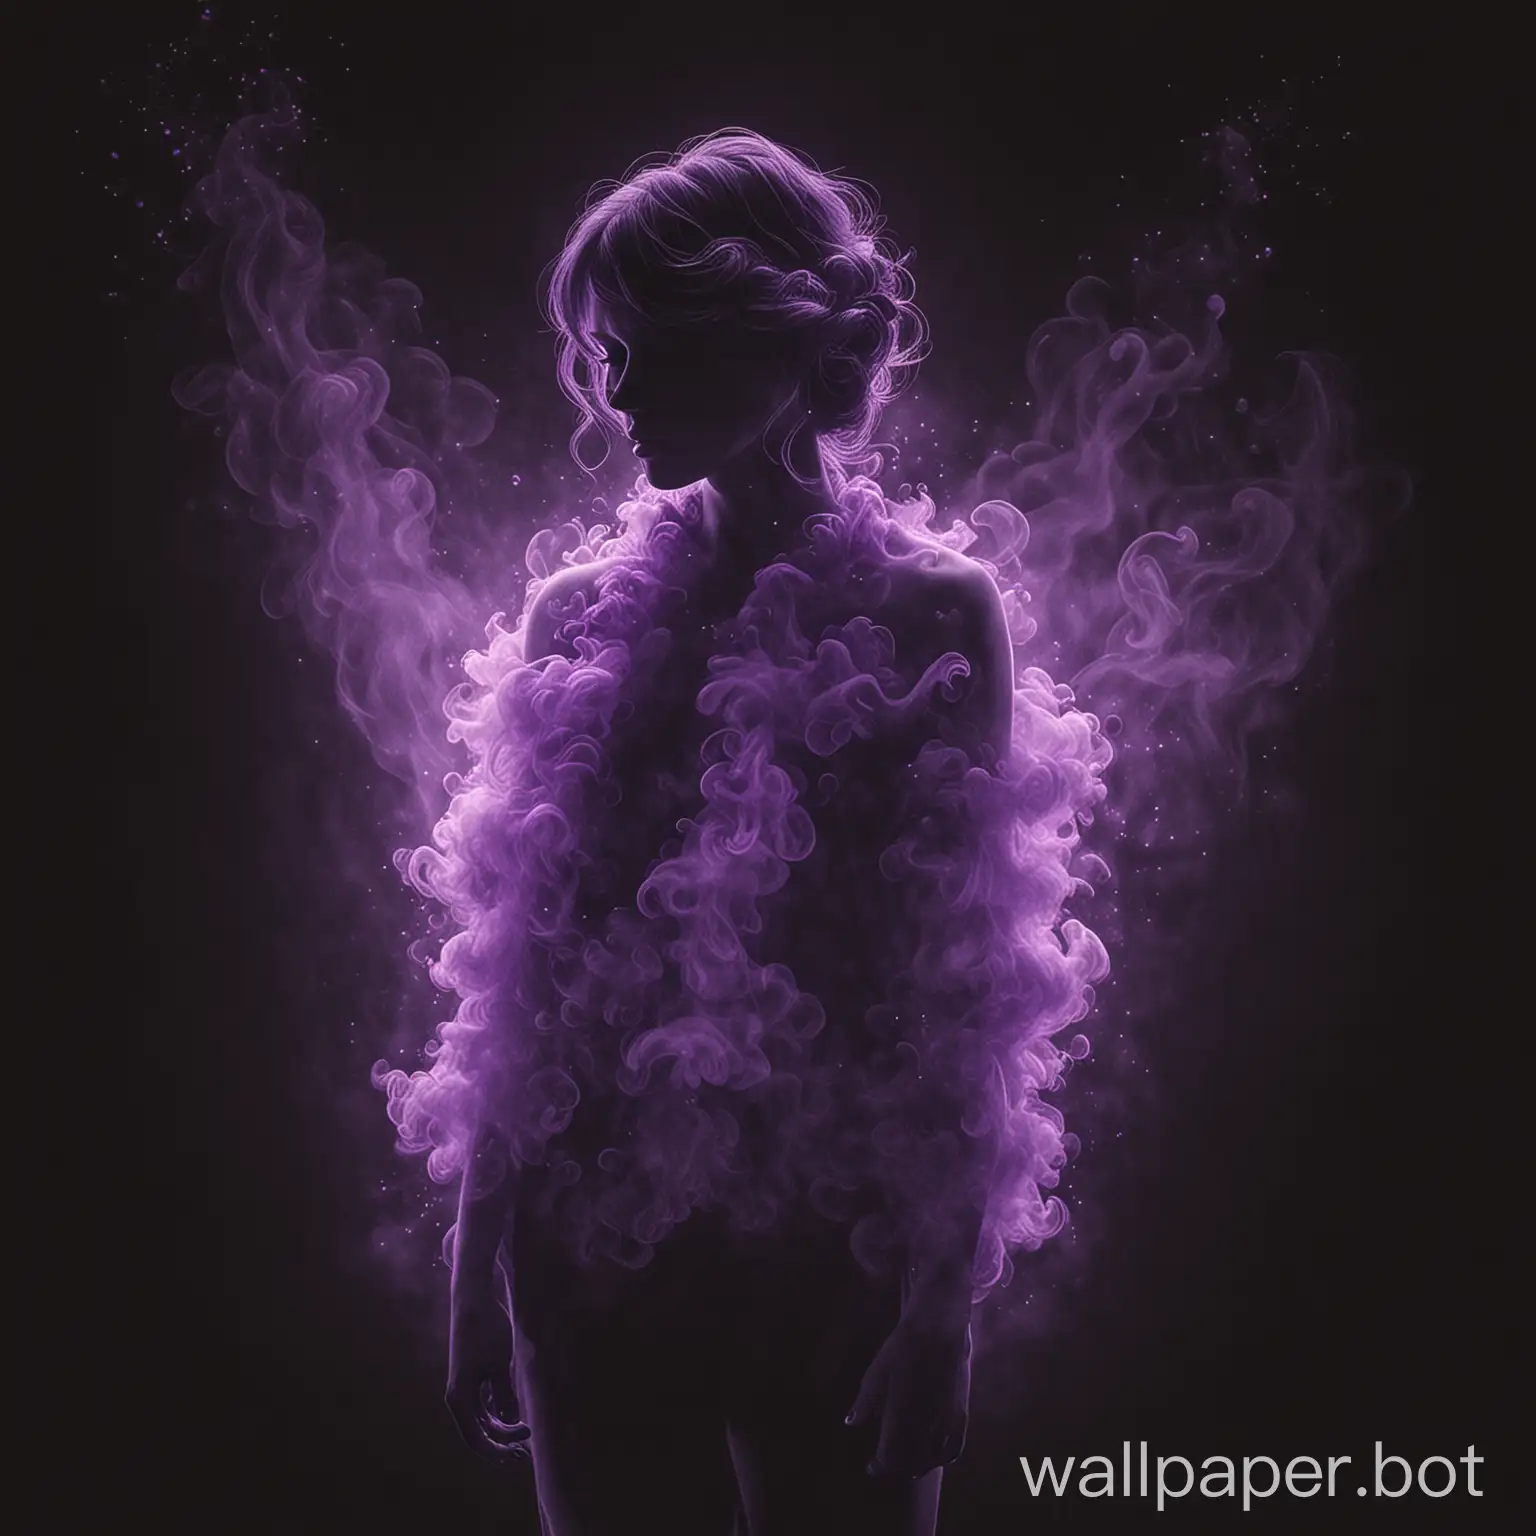 нарисуй сгусток фиолетового тумана в виже человека на черном фоне
